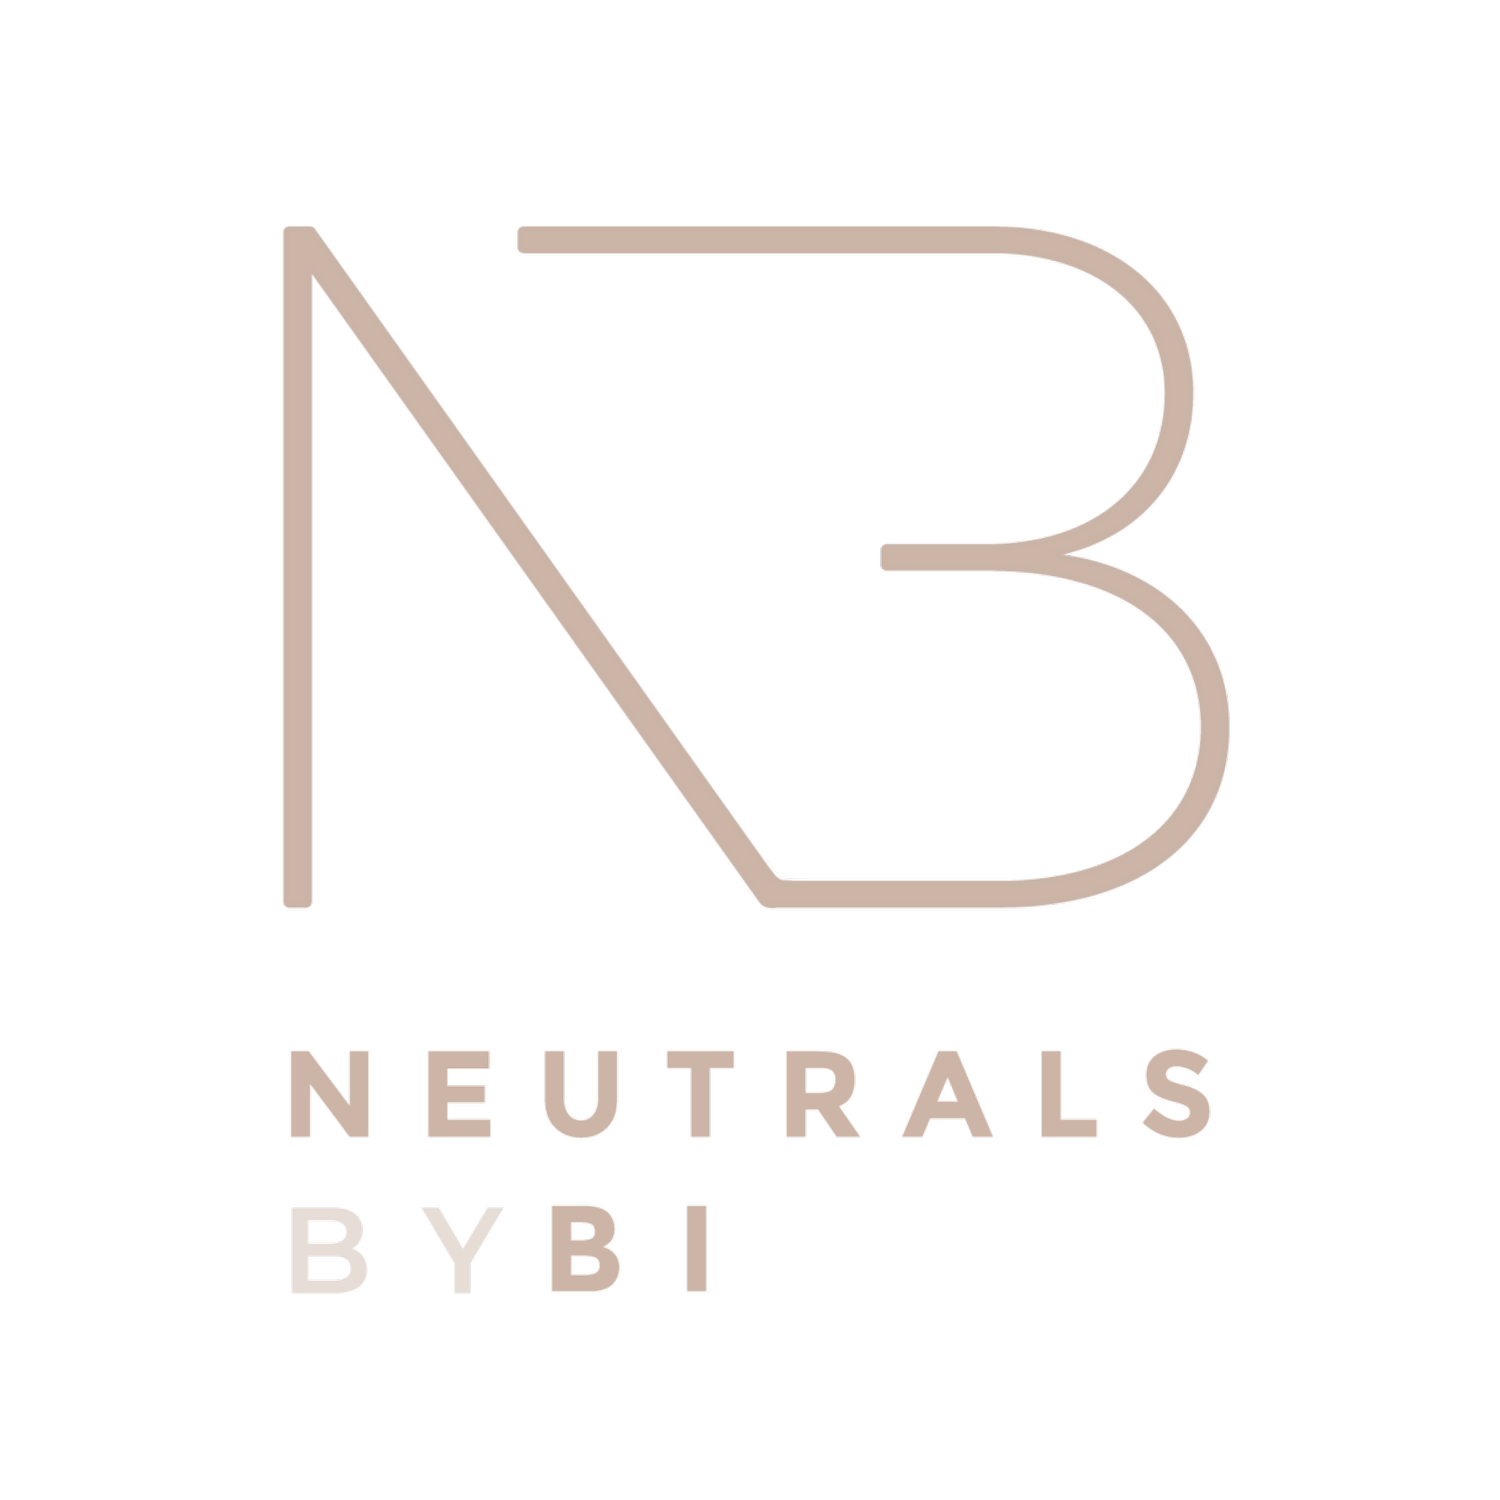 Neutrals ByBi